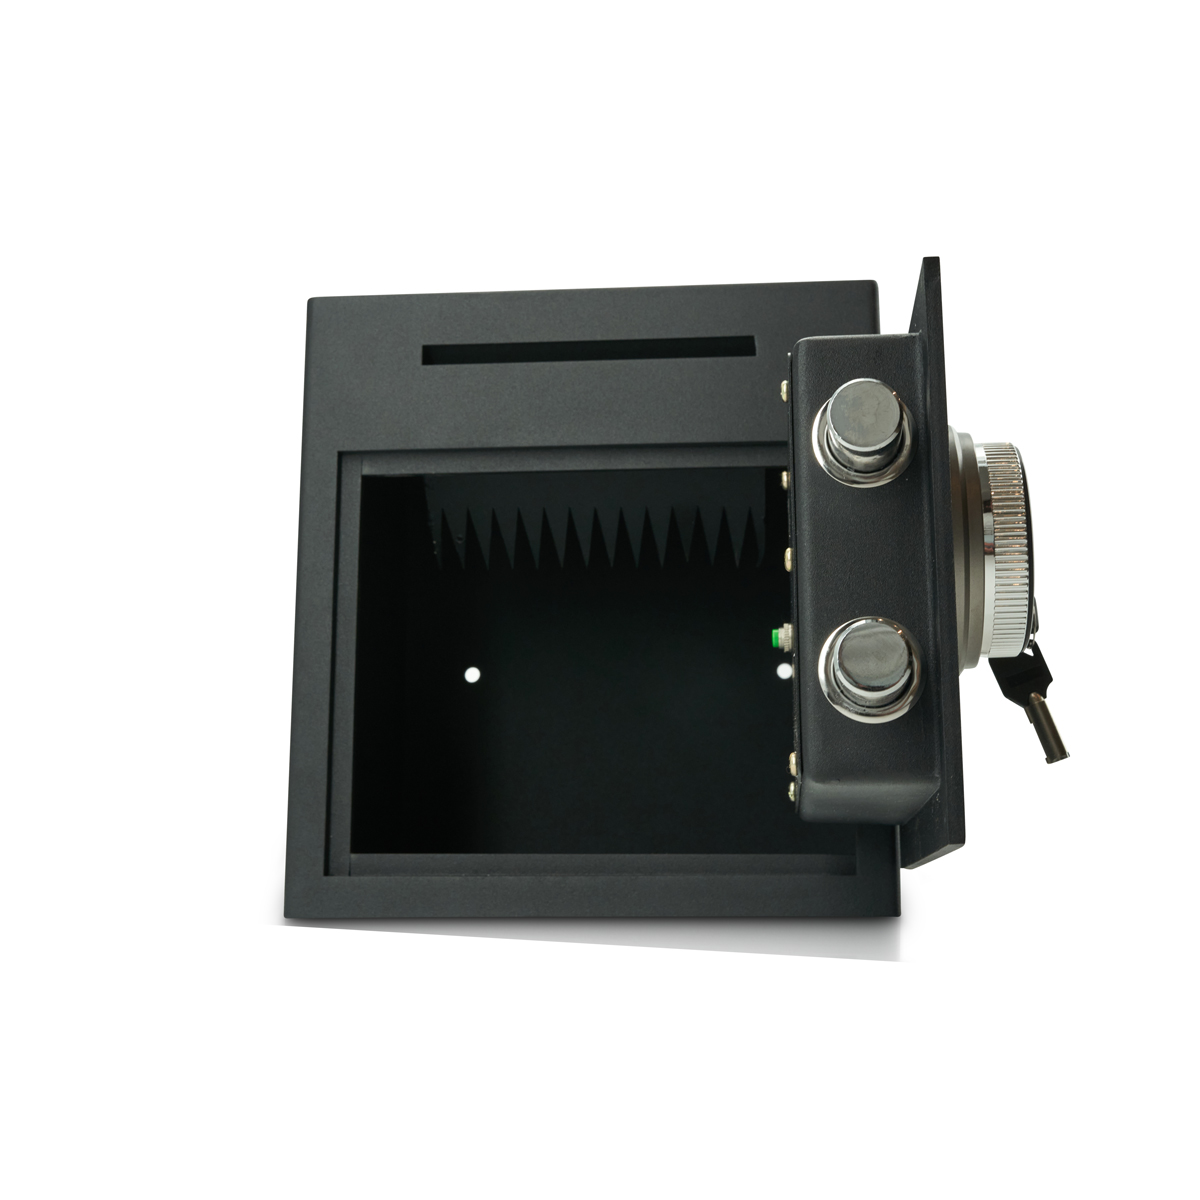 Cofre de depósito com fechadura de código PIN com impressão digital | Scanner de impressão digital | Gastronomia